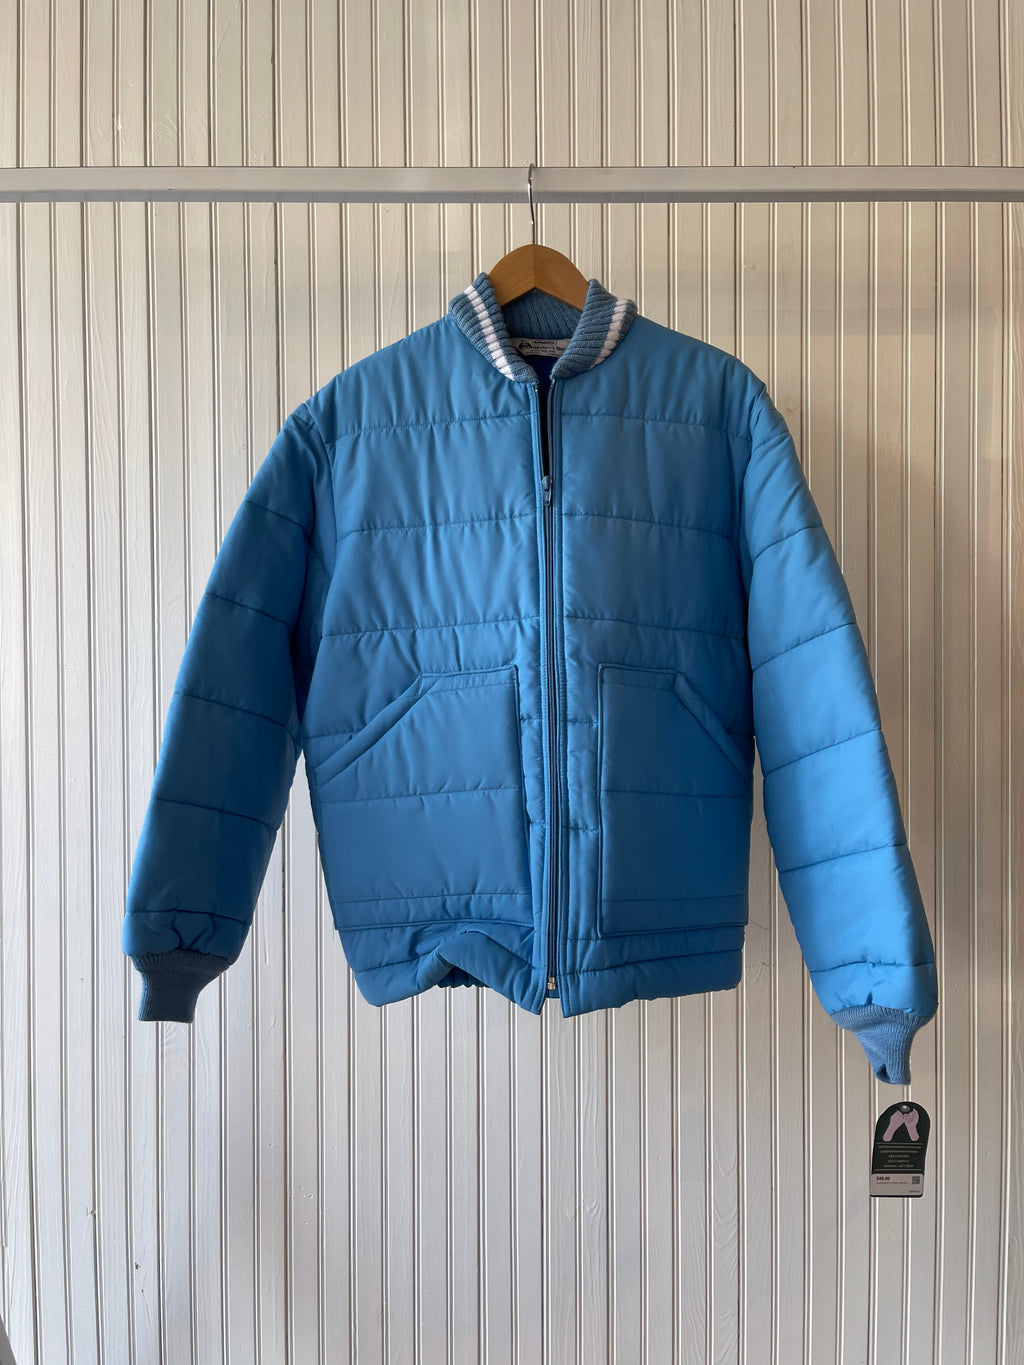 Vintage Deadstock Ski Jacket - Baby Blue